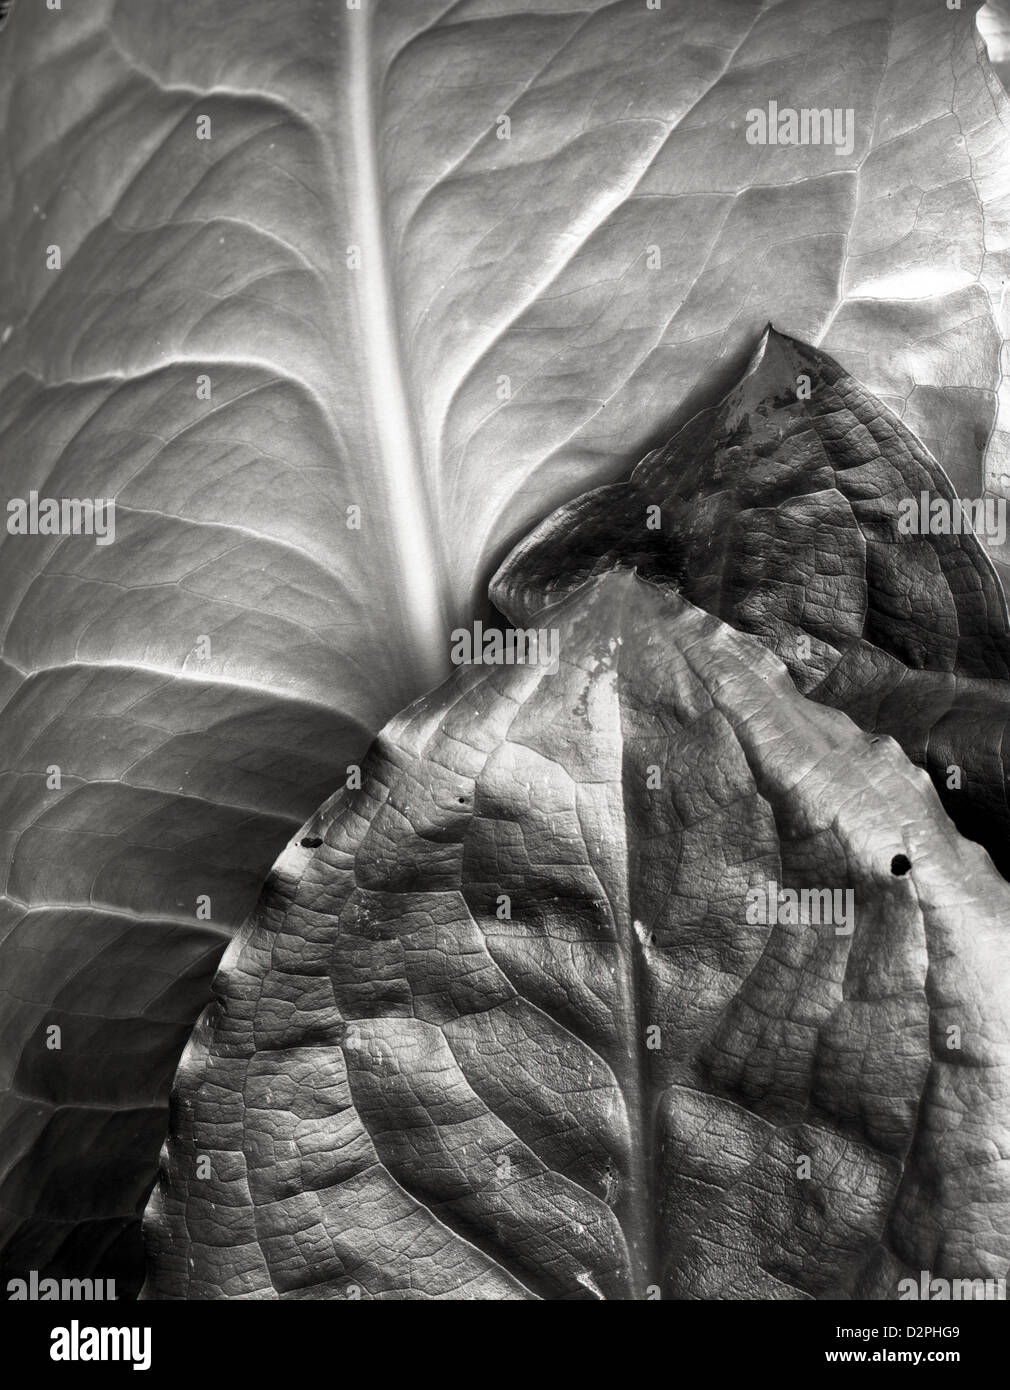 BW00879-00...WASHINGTON - Skunk cabbage leaves. Stock Photo